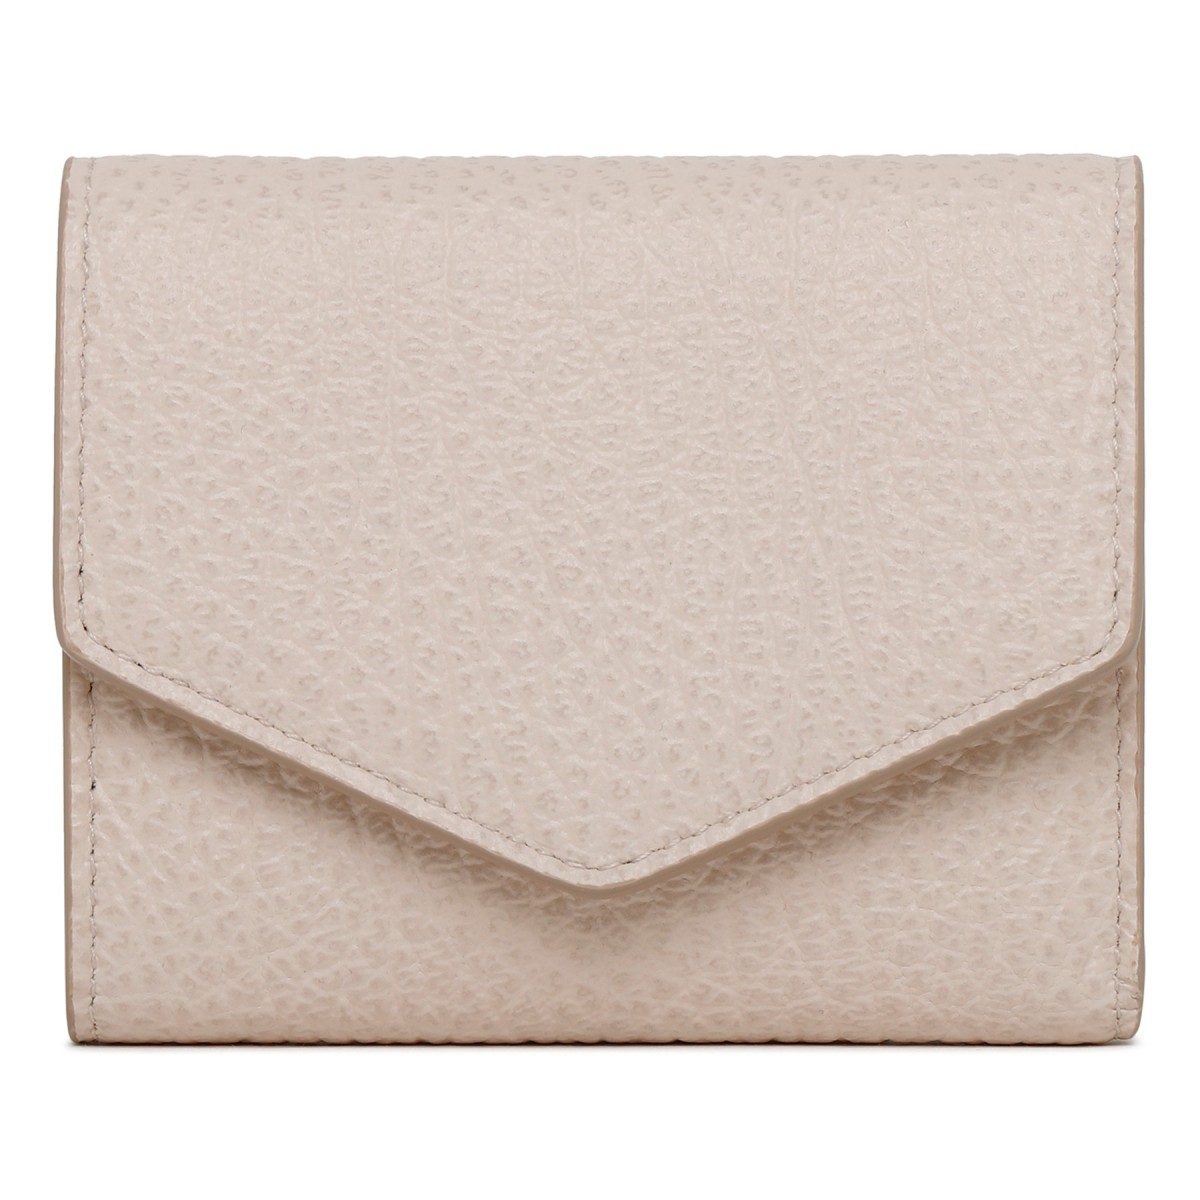 Pink leather Envelope Wallet